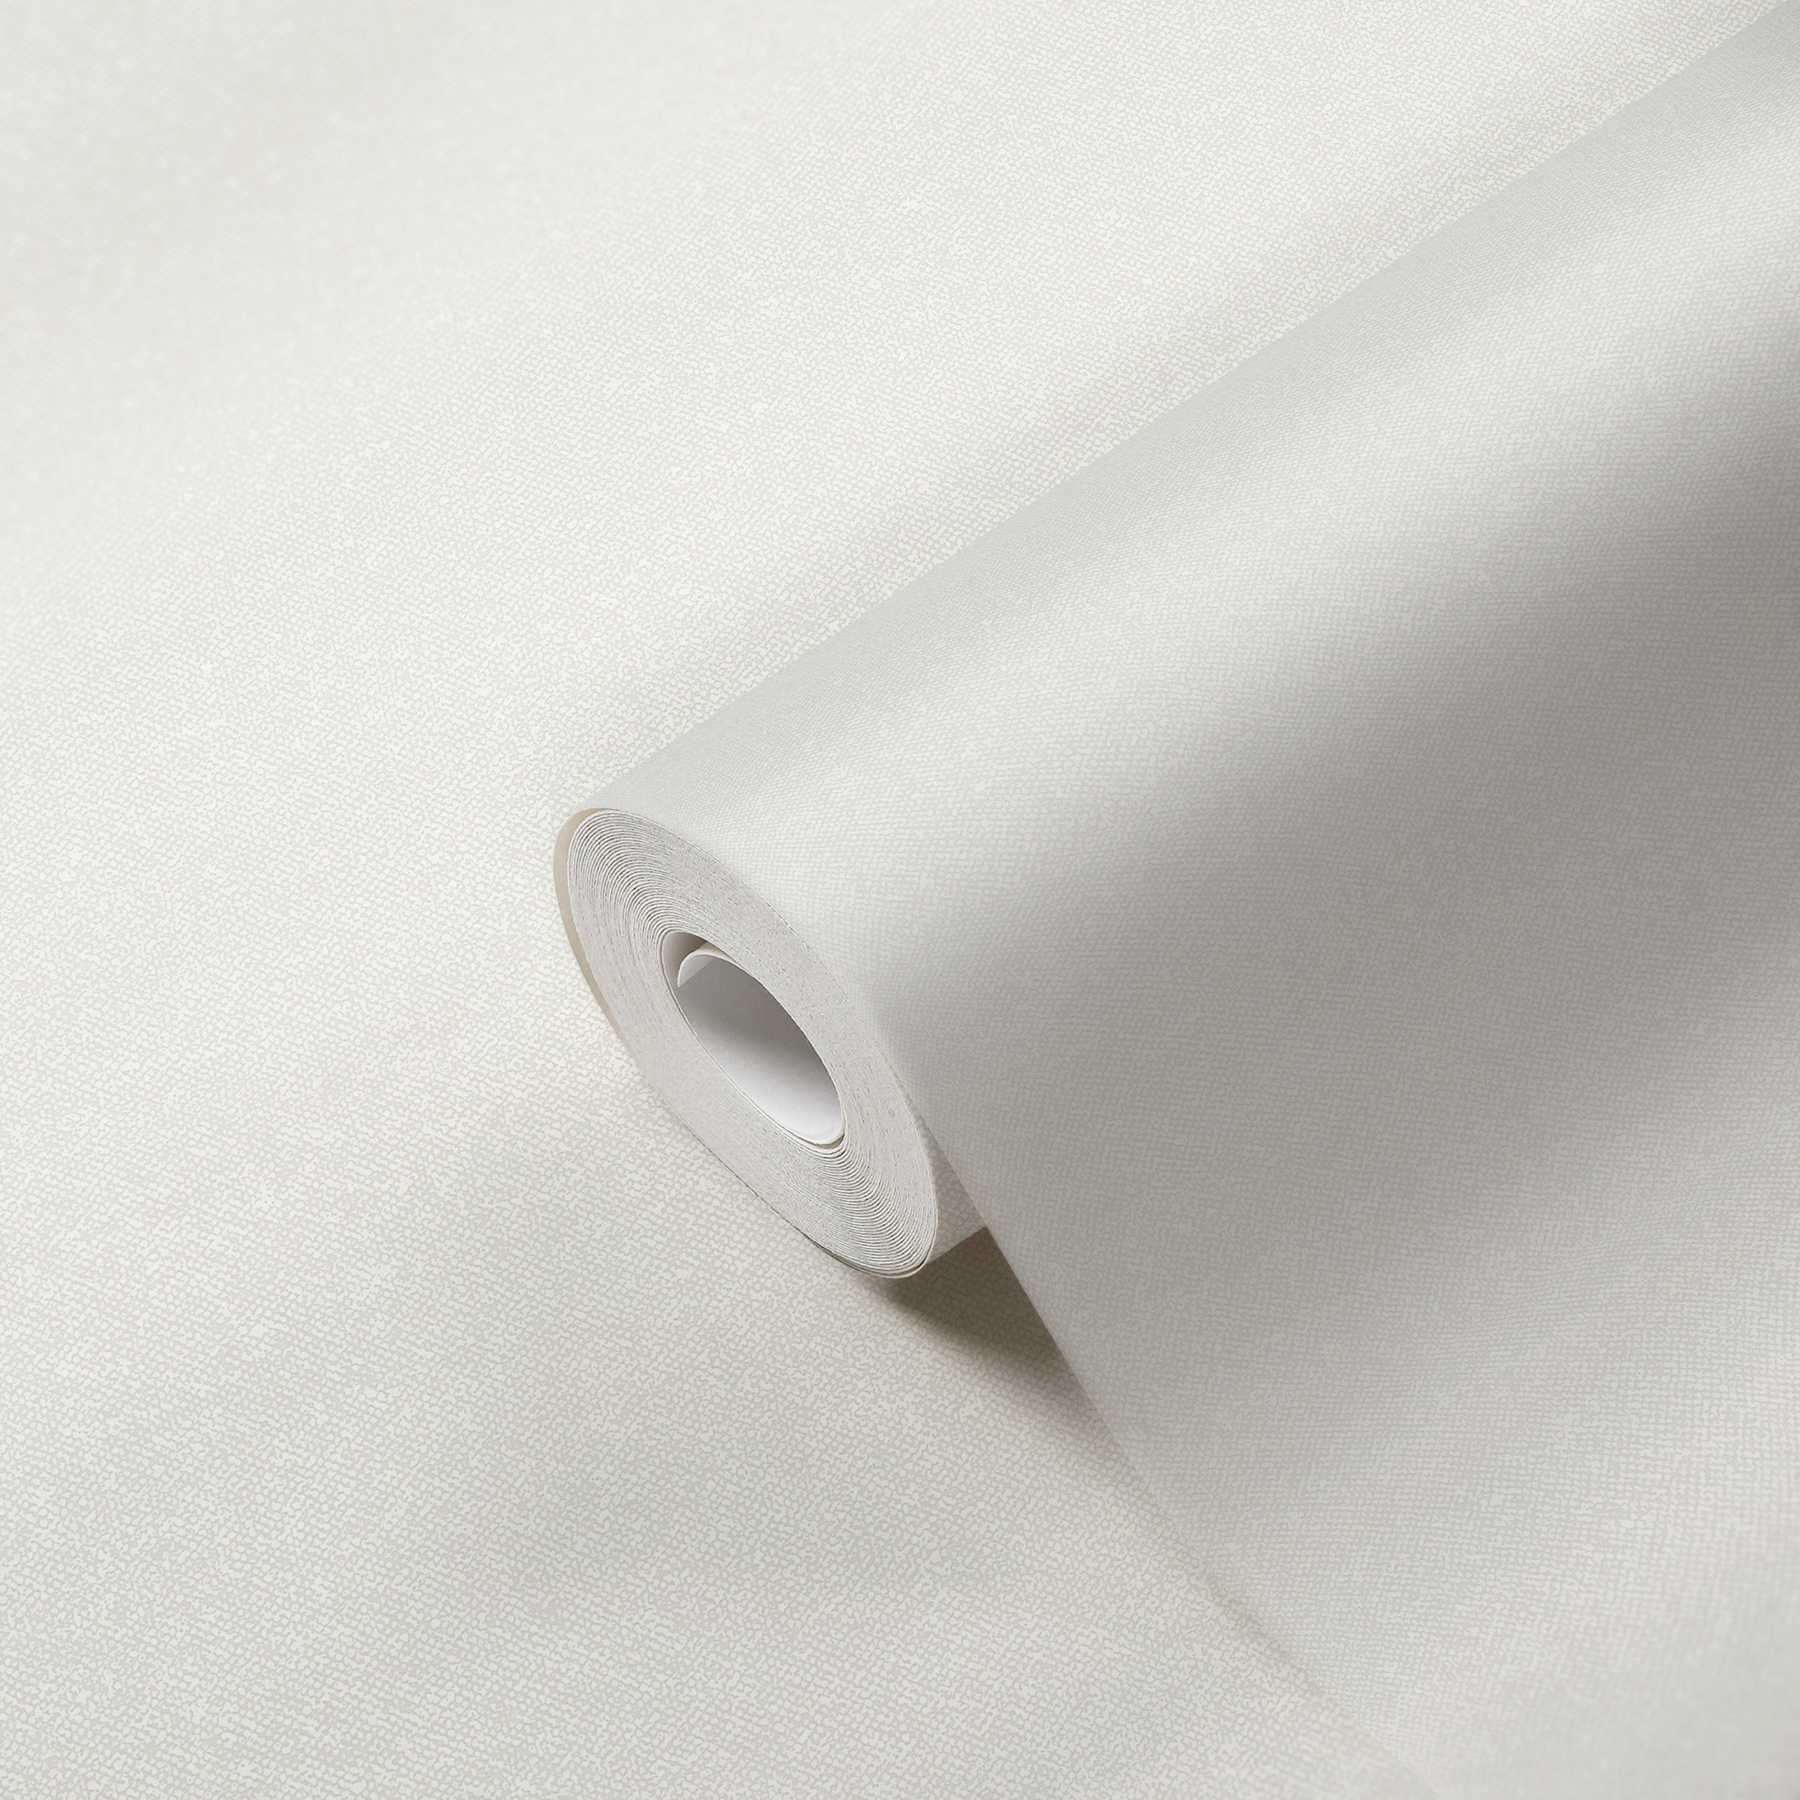             Papier peint à l'aspect textile uni - blanc, crème
        